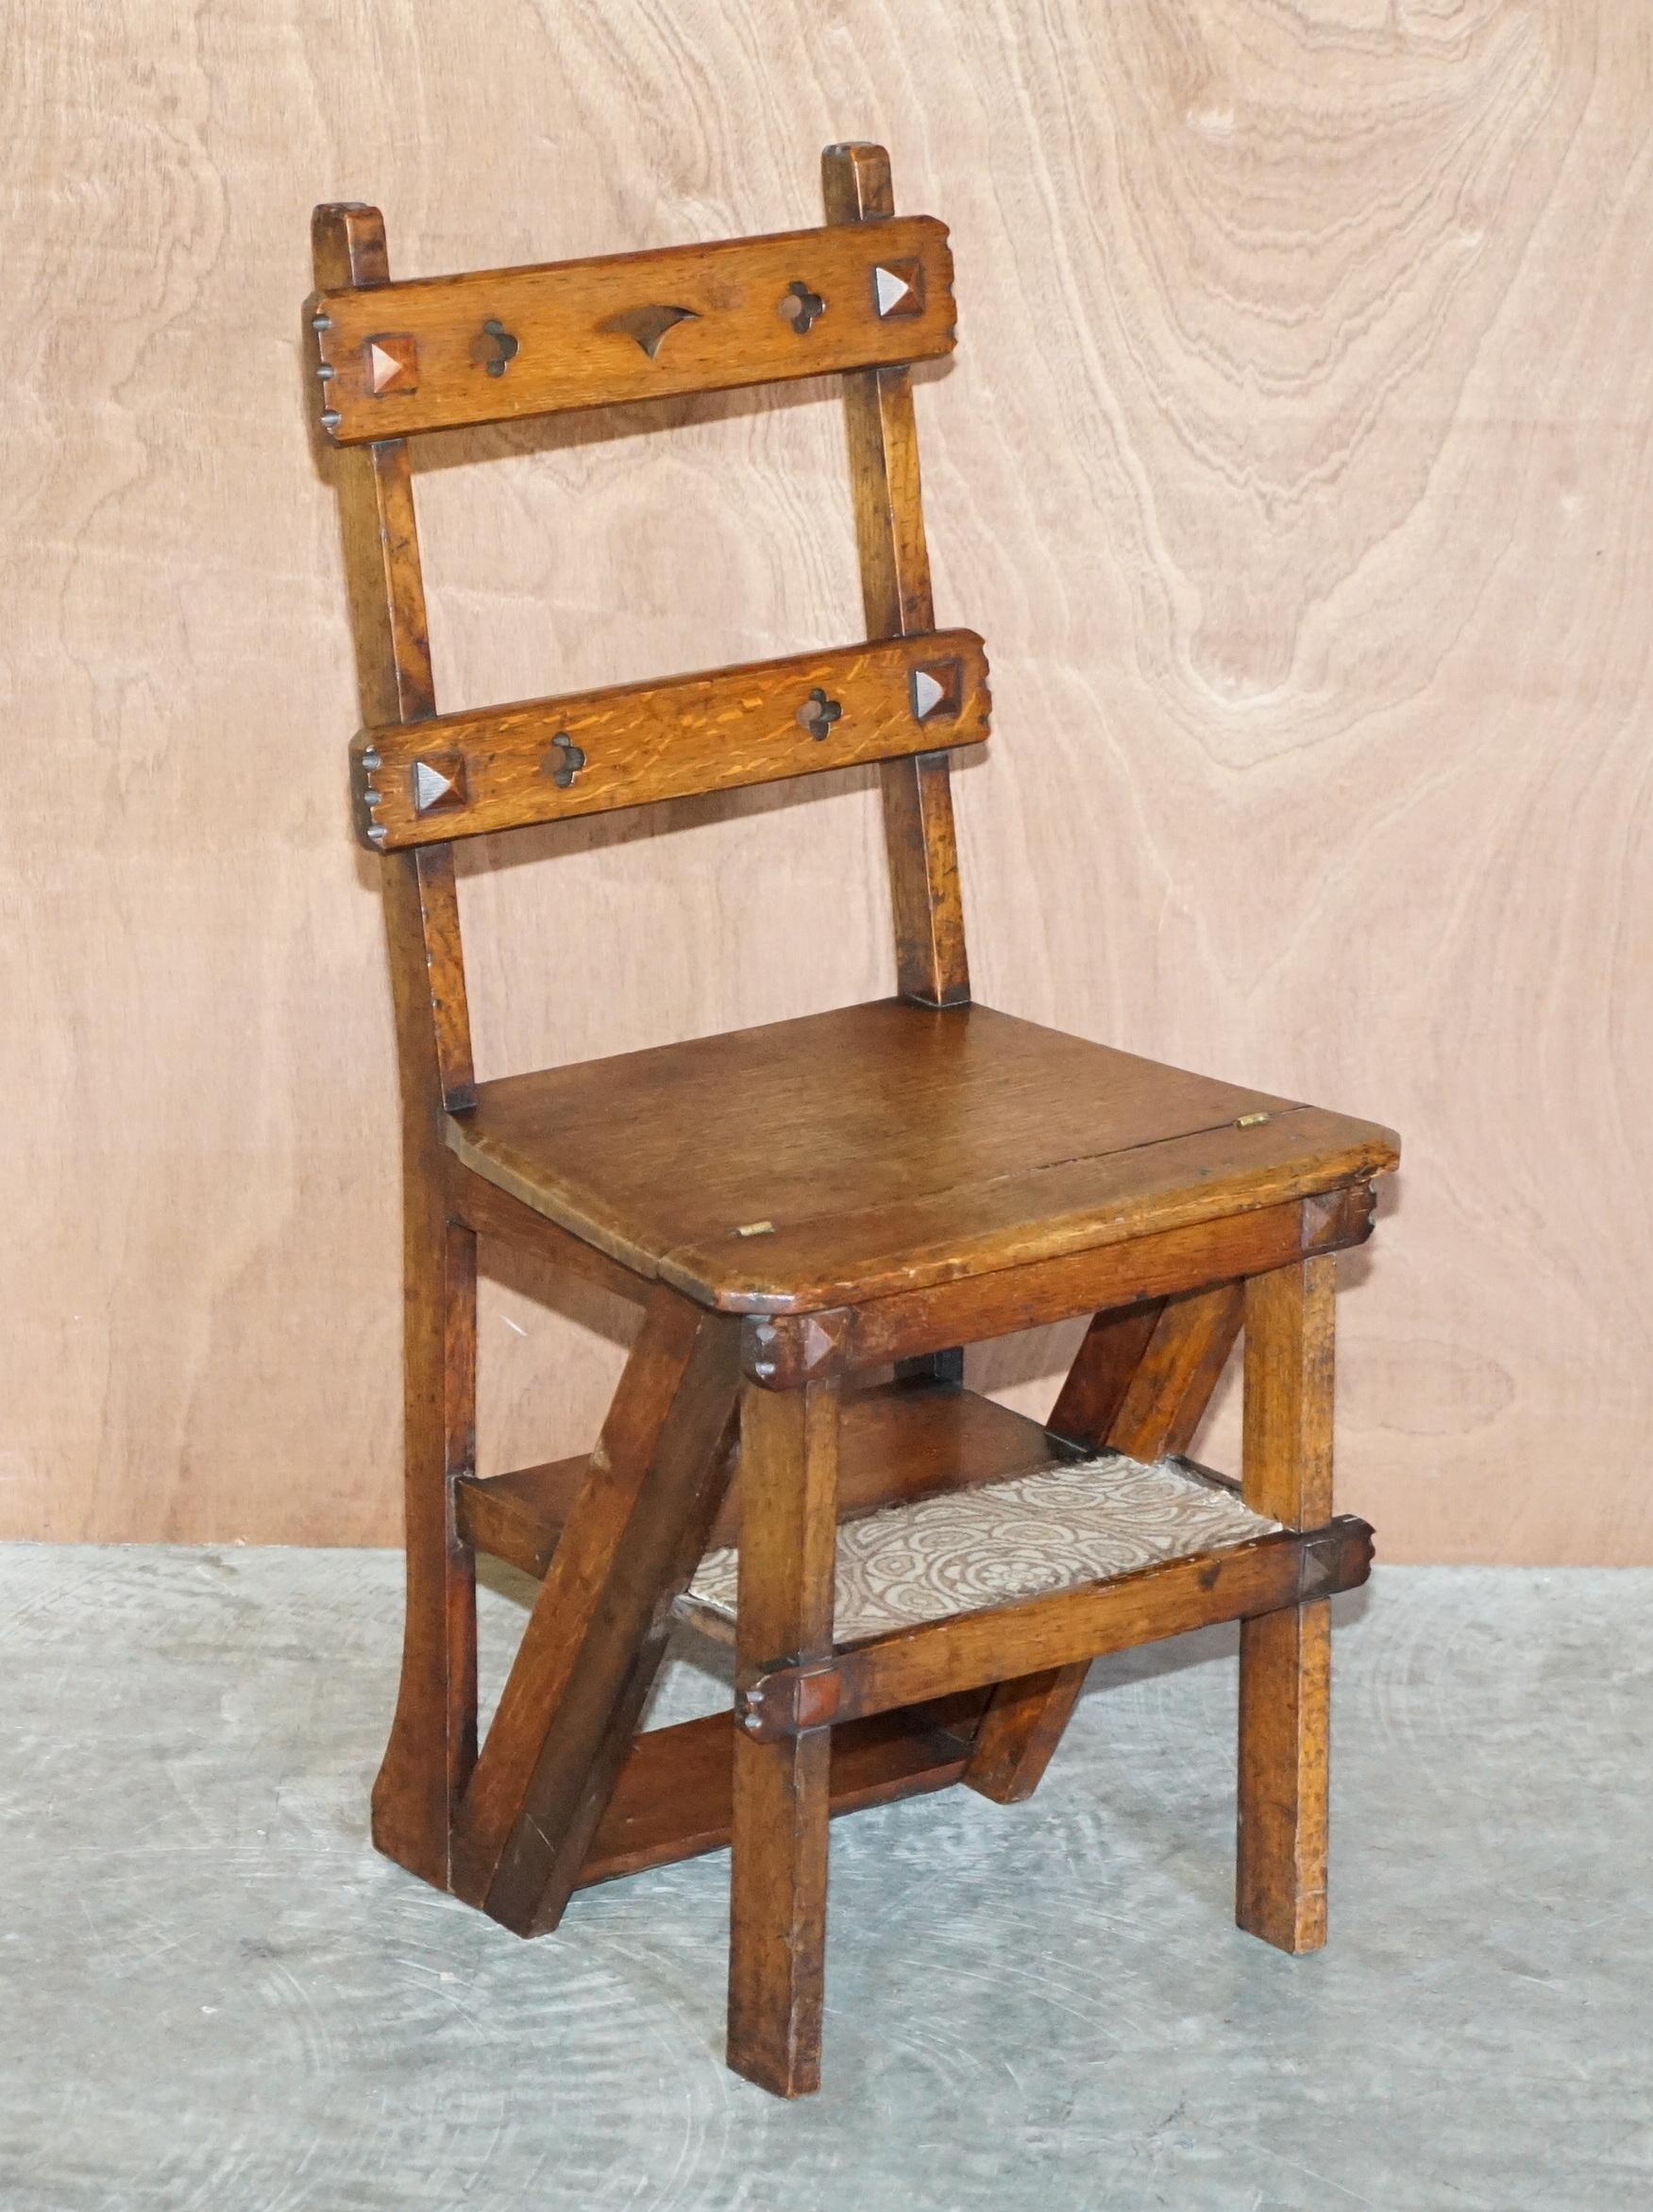 Nous sommes ravis d'offrir à la vente cette belle chaise de bibliothèque Arts & Crafts Victorienne métamorphique en chêne avec des marches en tapis William Morris 

Une pièce très charmante et de grande collection, conçue comme une bibliothèque à